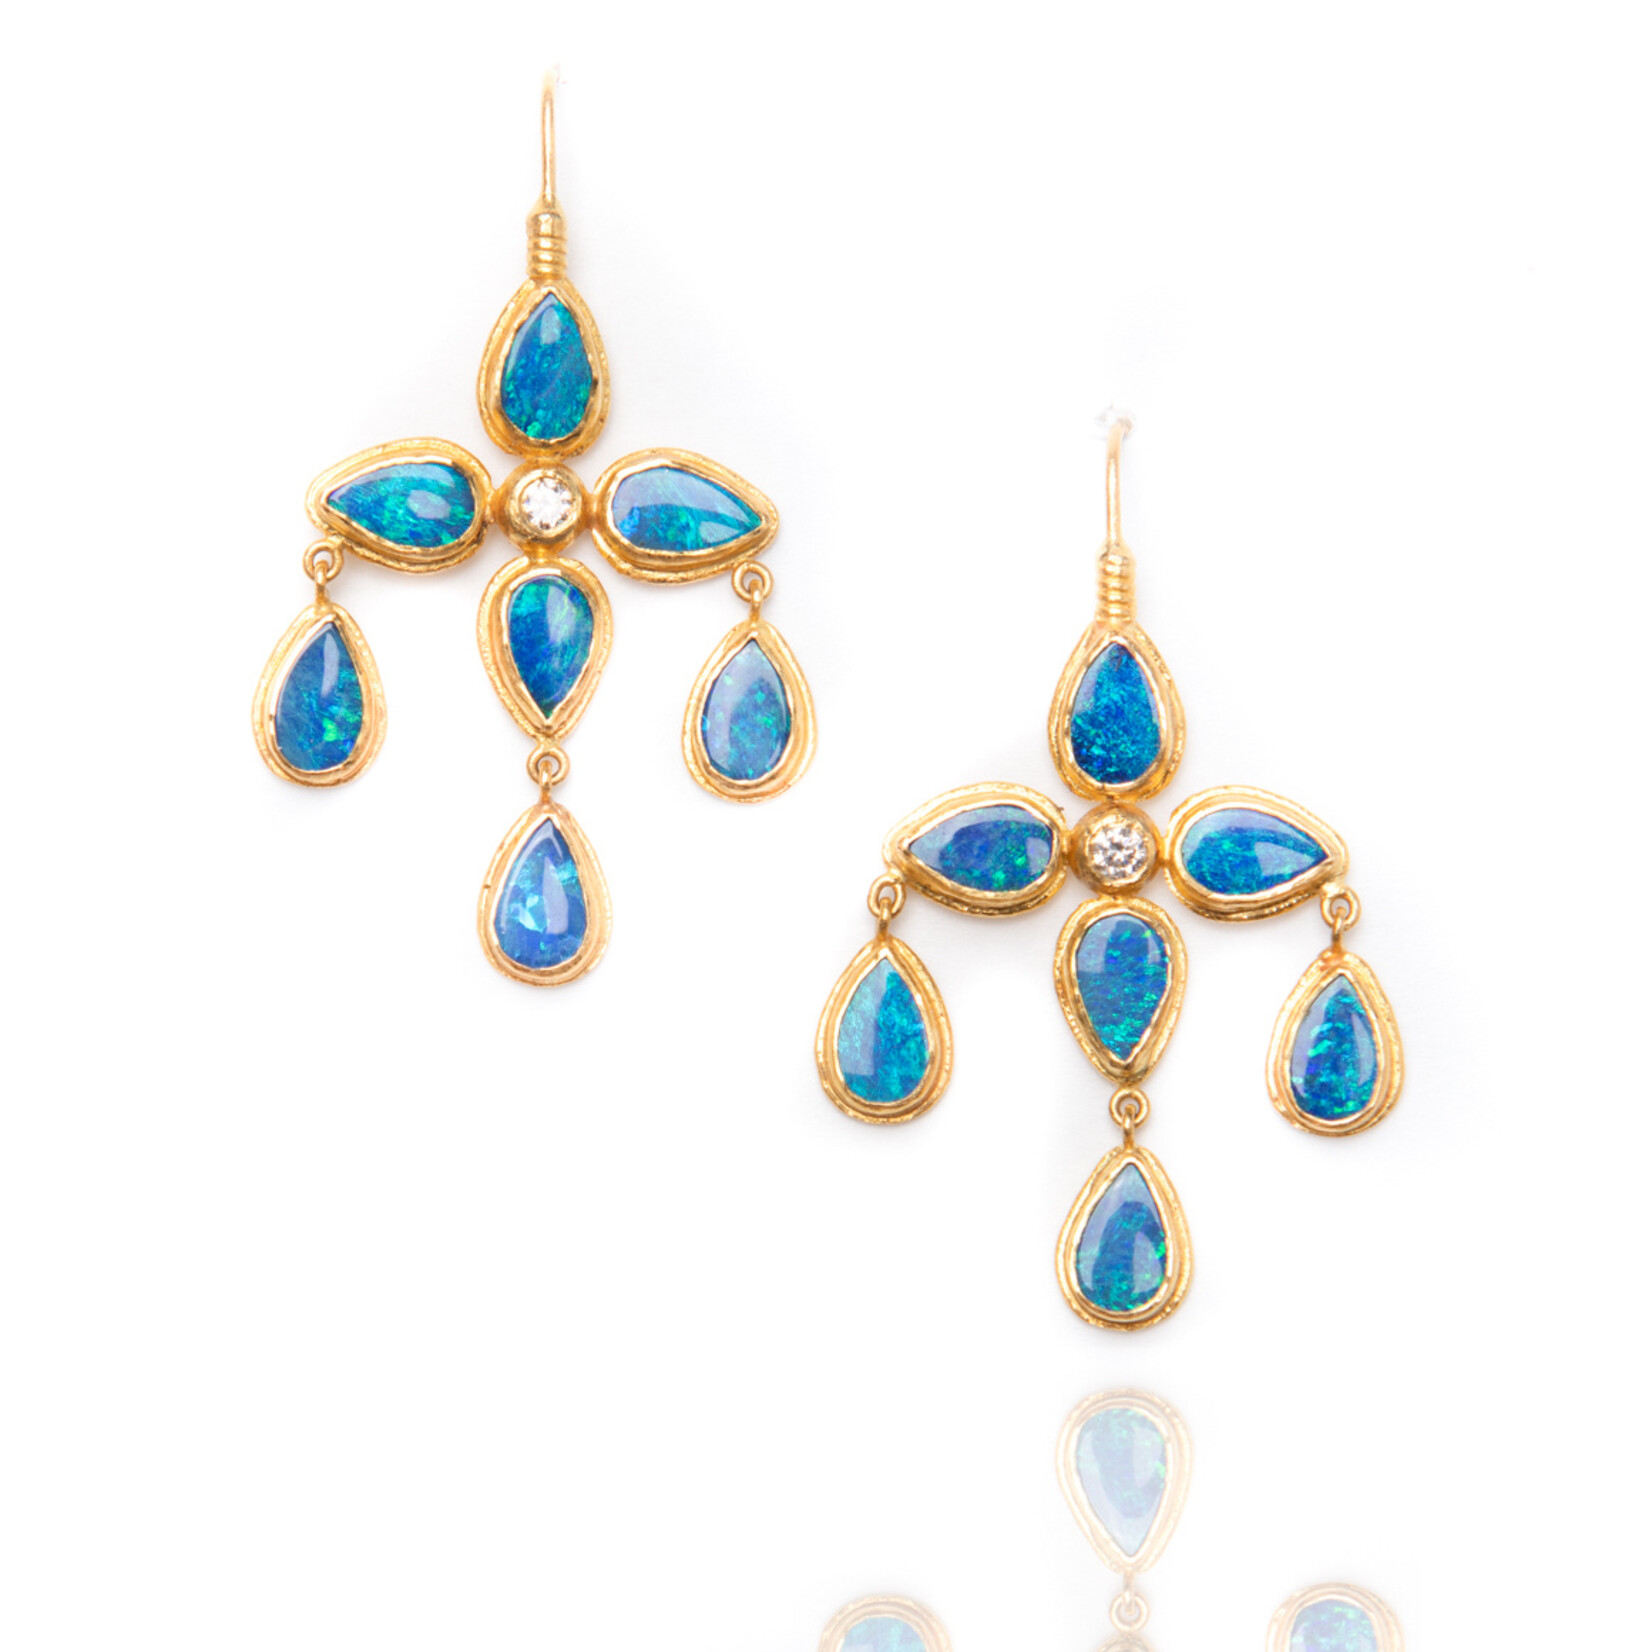 ARA 24k Collection 24k Gold and Australian Opal Flower Earrings